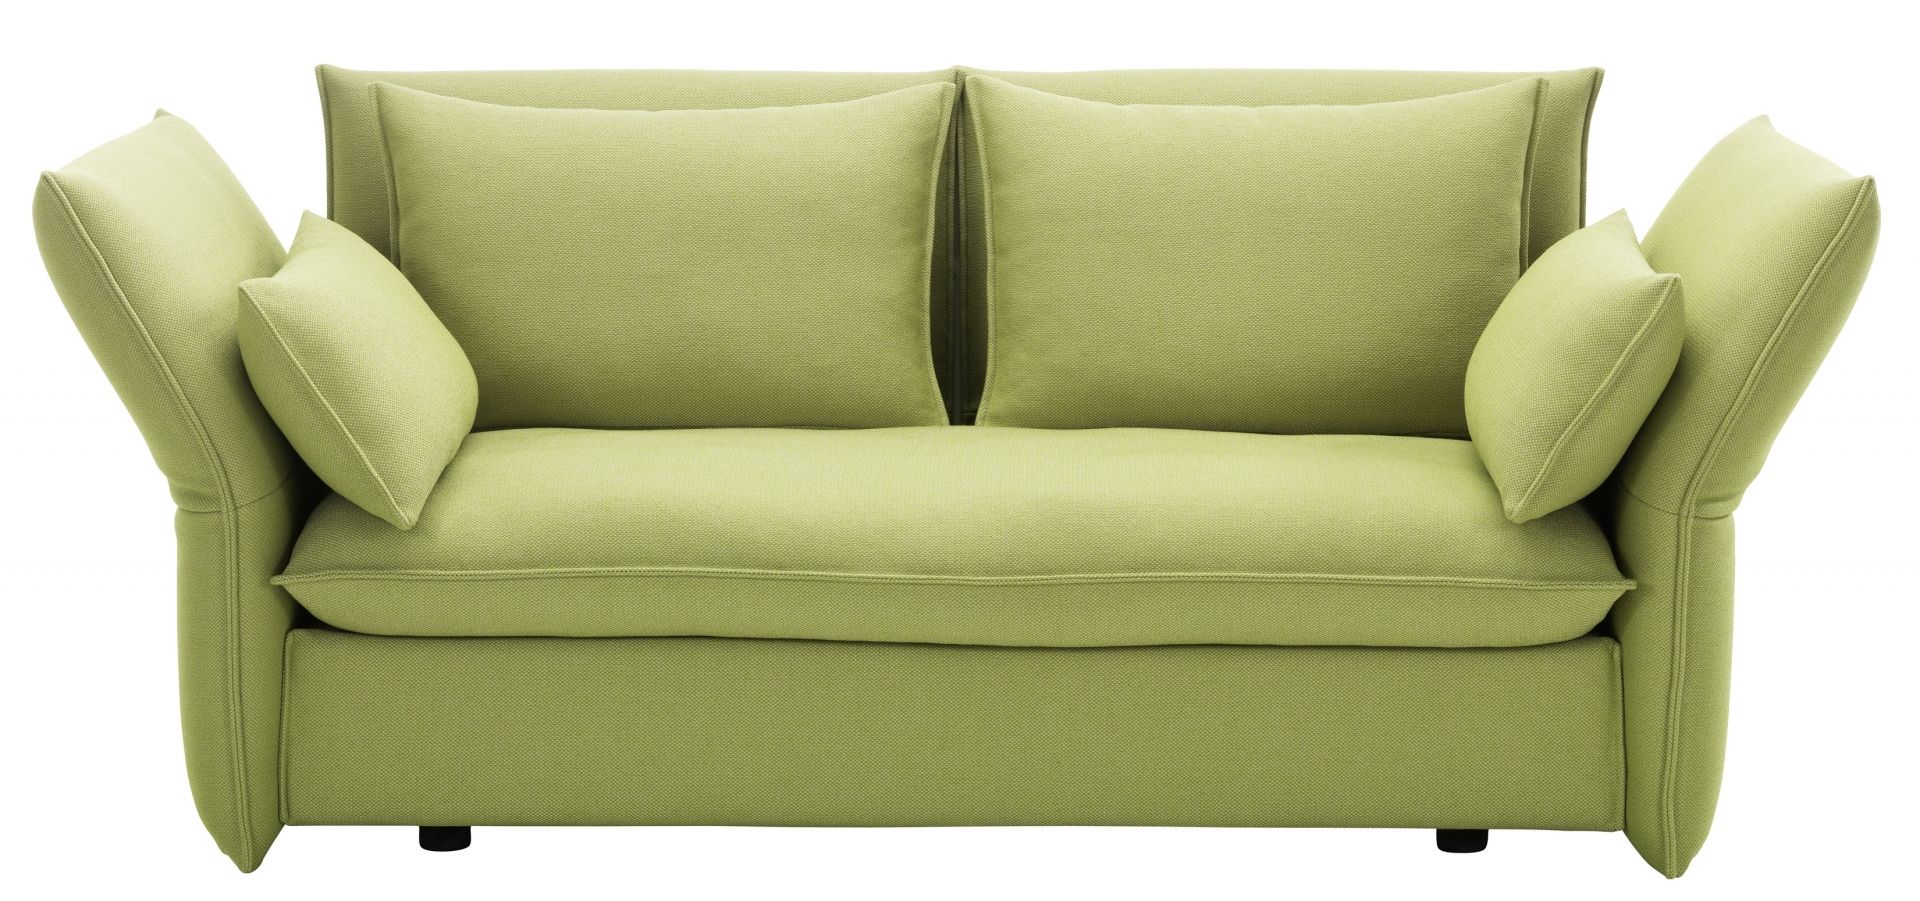 Vitra designové sedačky Mariposa (šířka 180 cm) - DESIGNPROPAGANDA